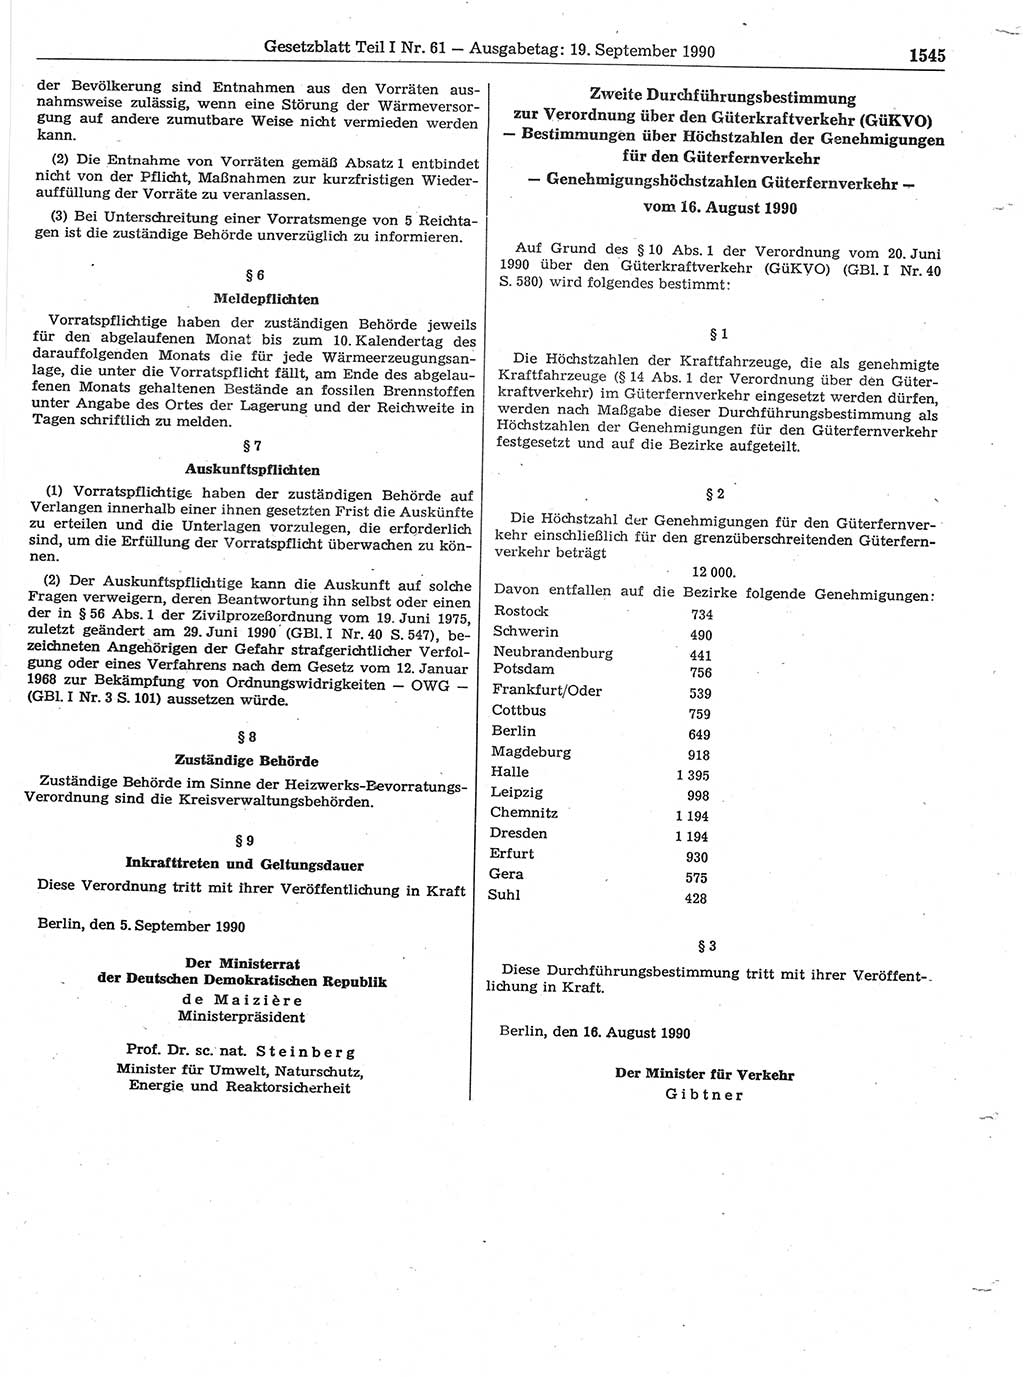 Gesetzblatt (GBl.) der Deutschen Demokratischen Republik (DDR) Teil Ⅰ 1990, Seite 1545 (GBl. DDR Ⅰ 1990, S. 1545)